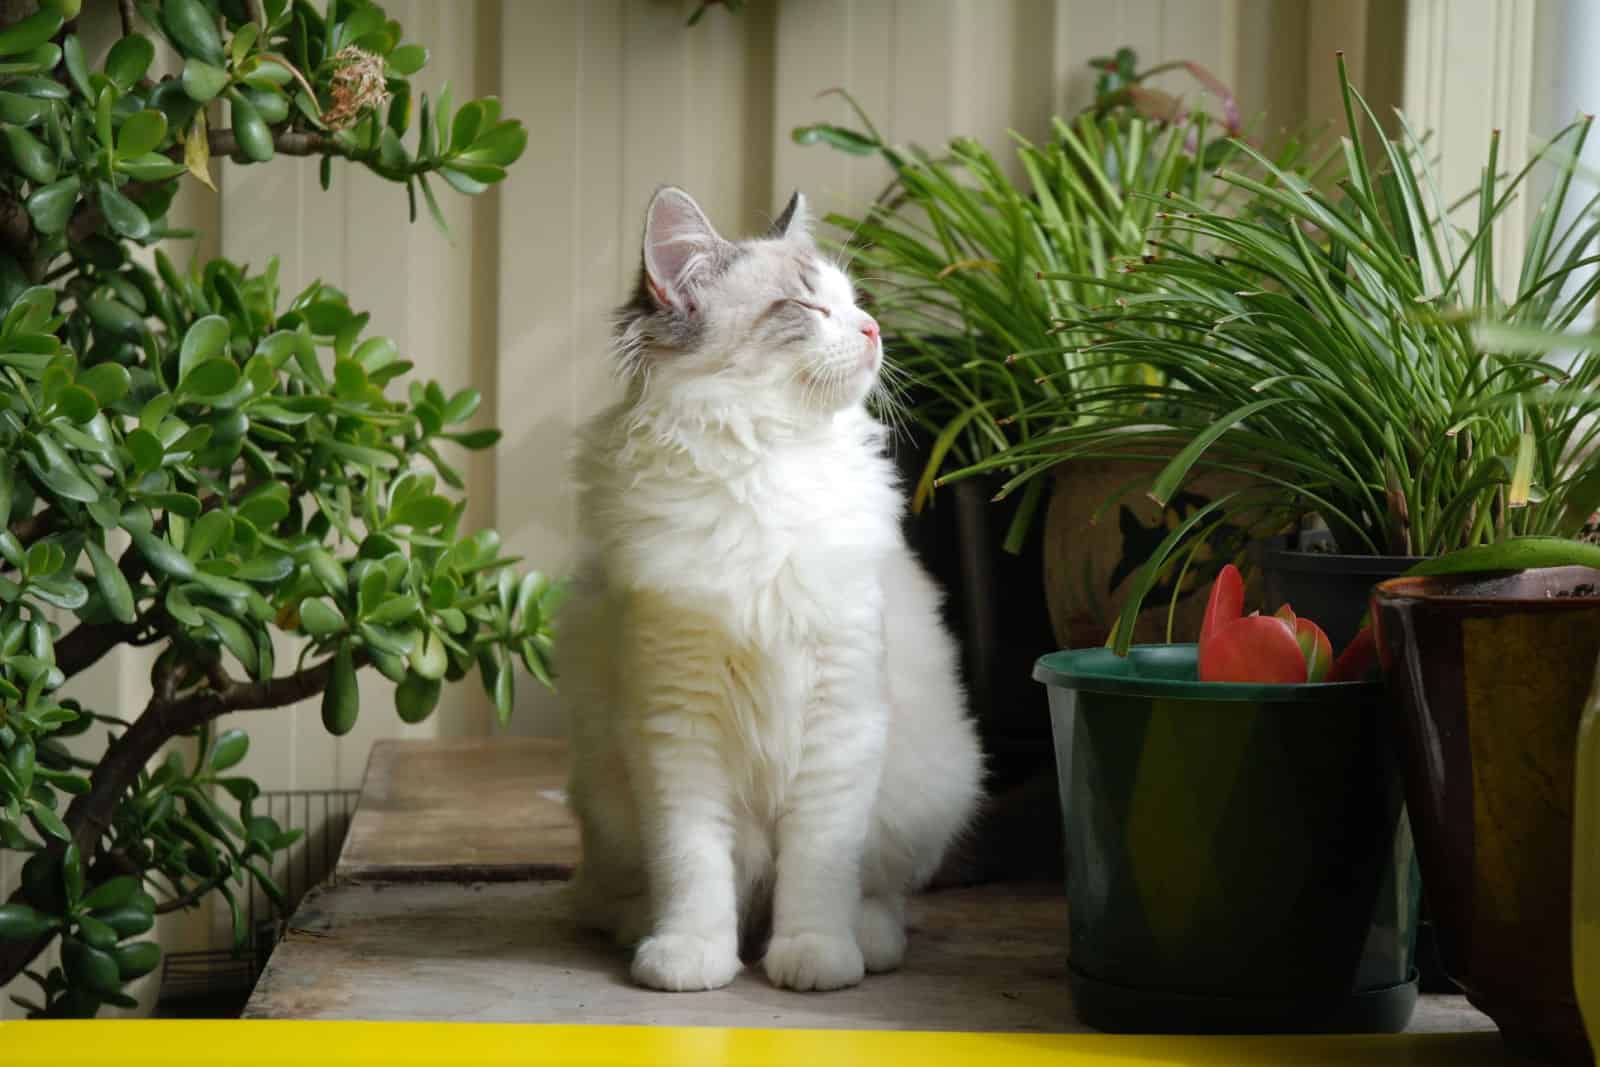 Ragdoll kitten outdoors, in garden with plants, greenery